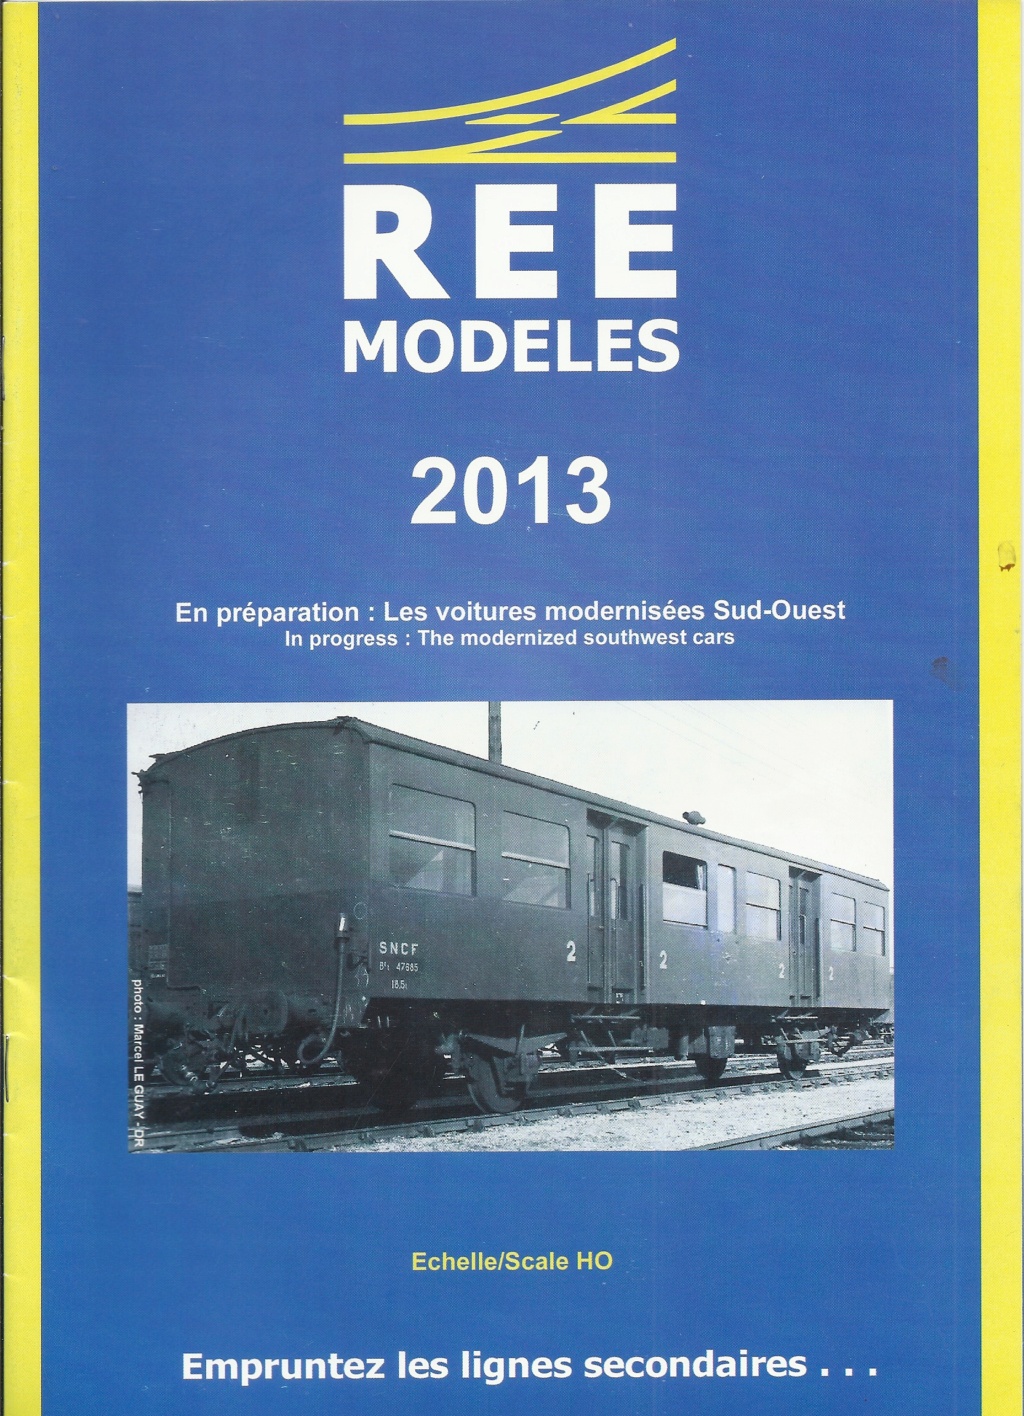 [REE MODELES 2013] Catalogue nouveautés 2013 Ree_m104